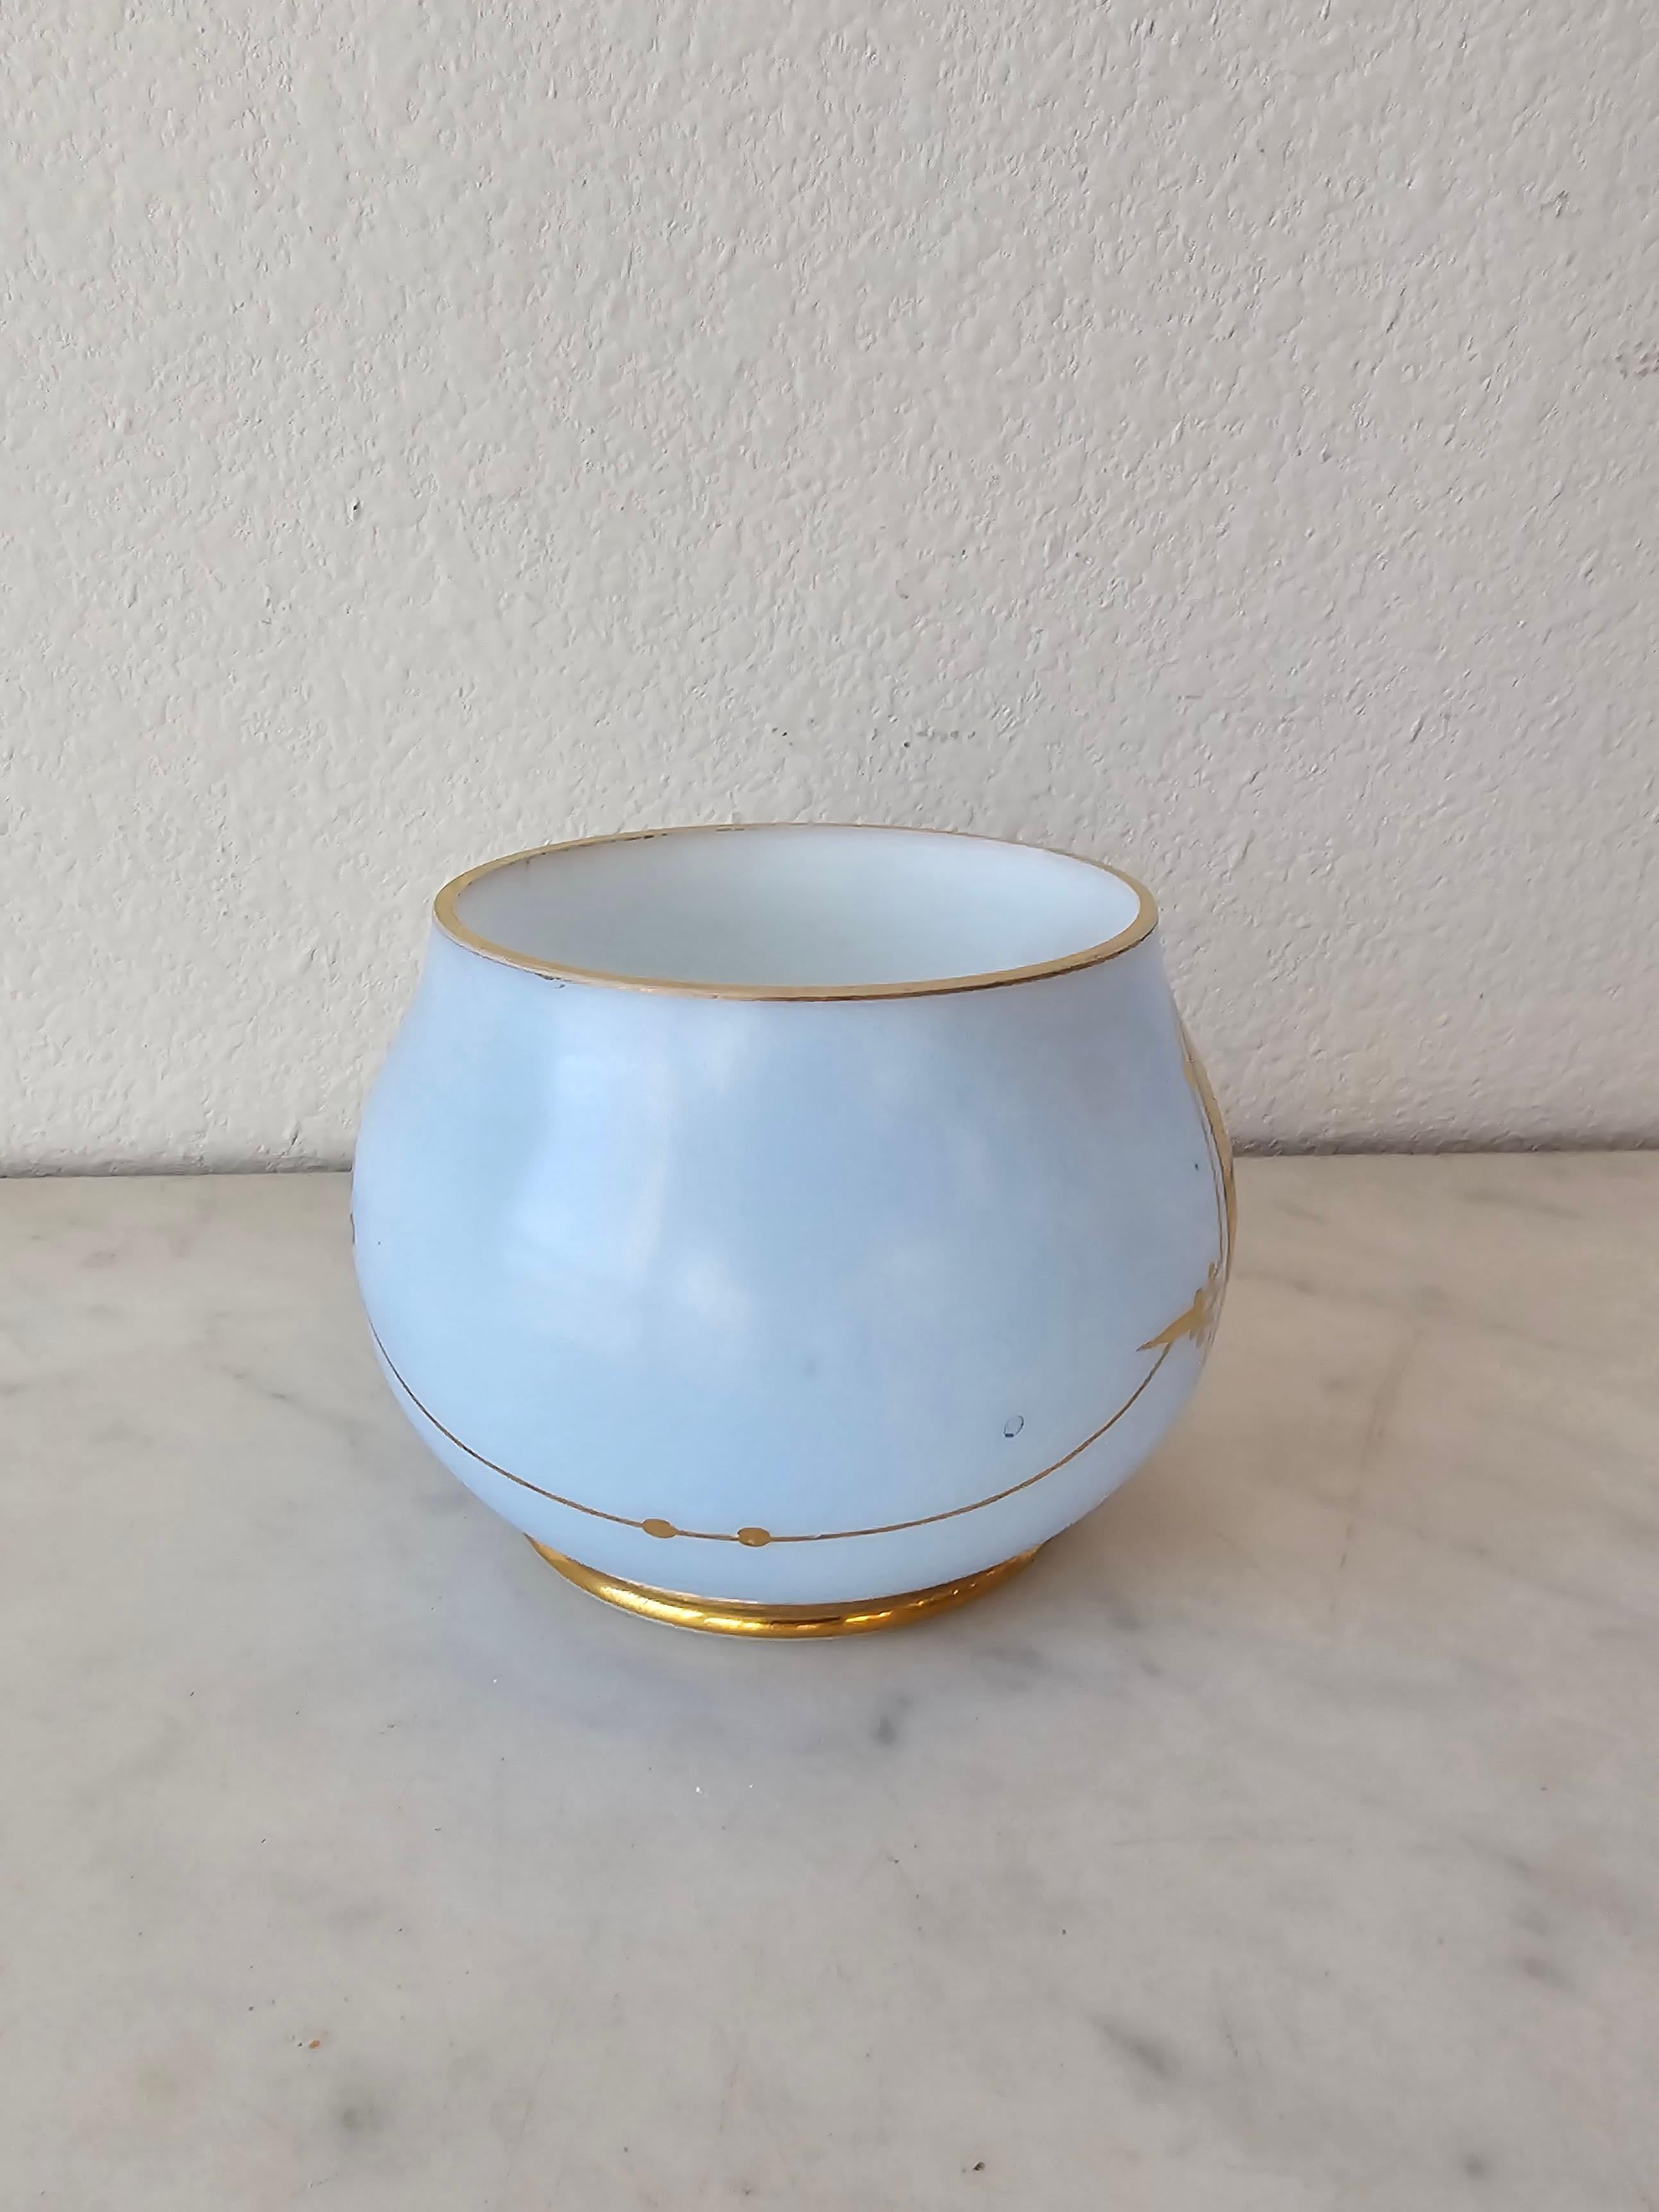 Fine Victorian Blue Opaline Glass Antique Dresser Cachepot Table Bowl For Sale 3